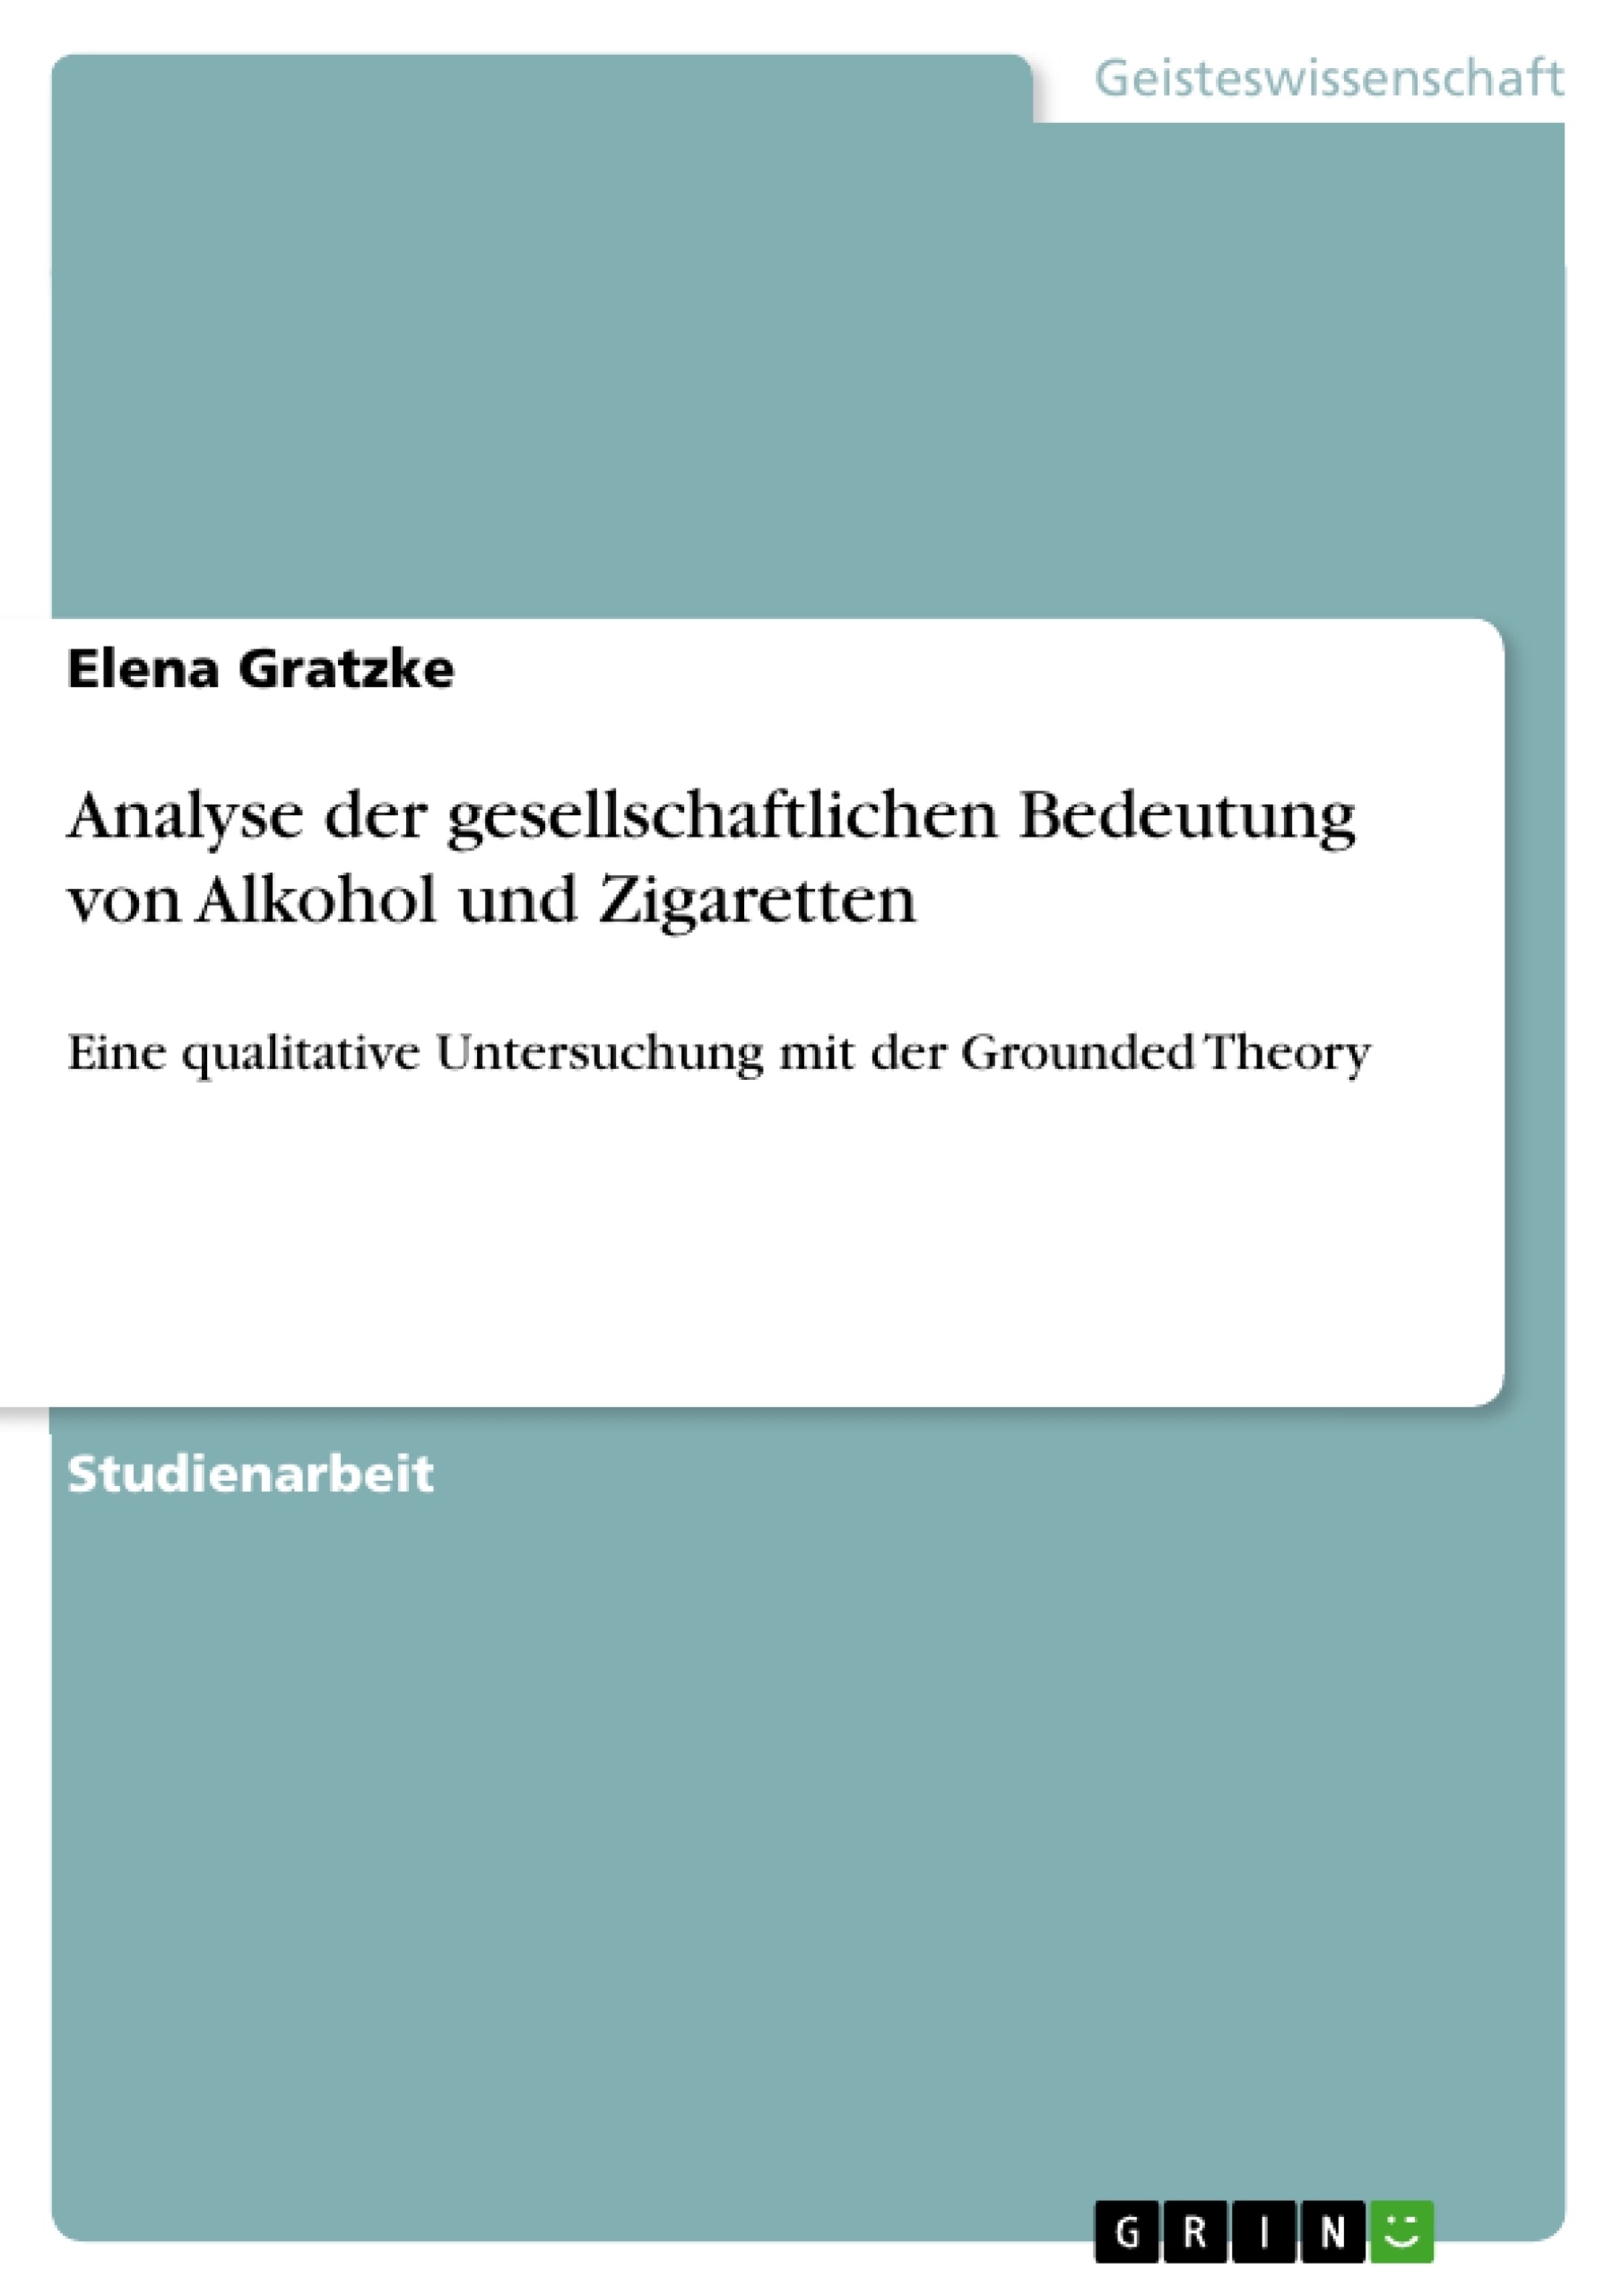 Title: Analyse der gesellschaftlichen Bedeutung von Alkohol und Zigaretten